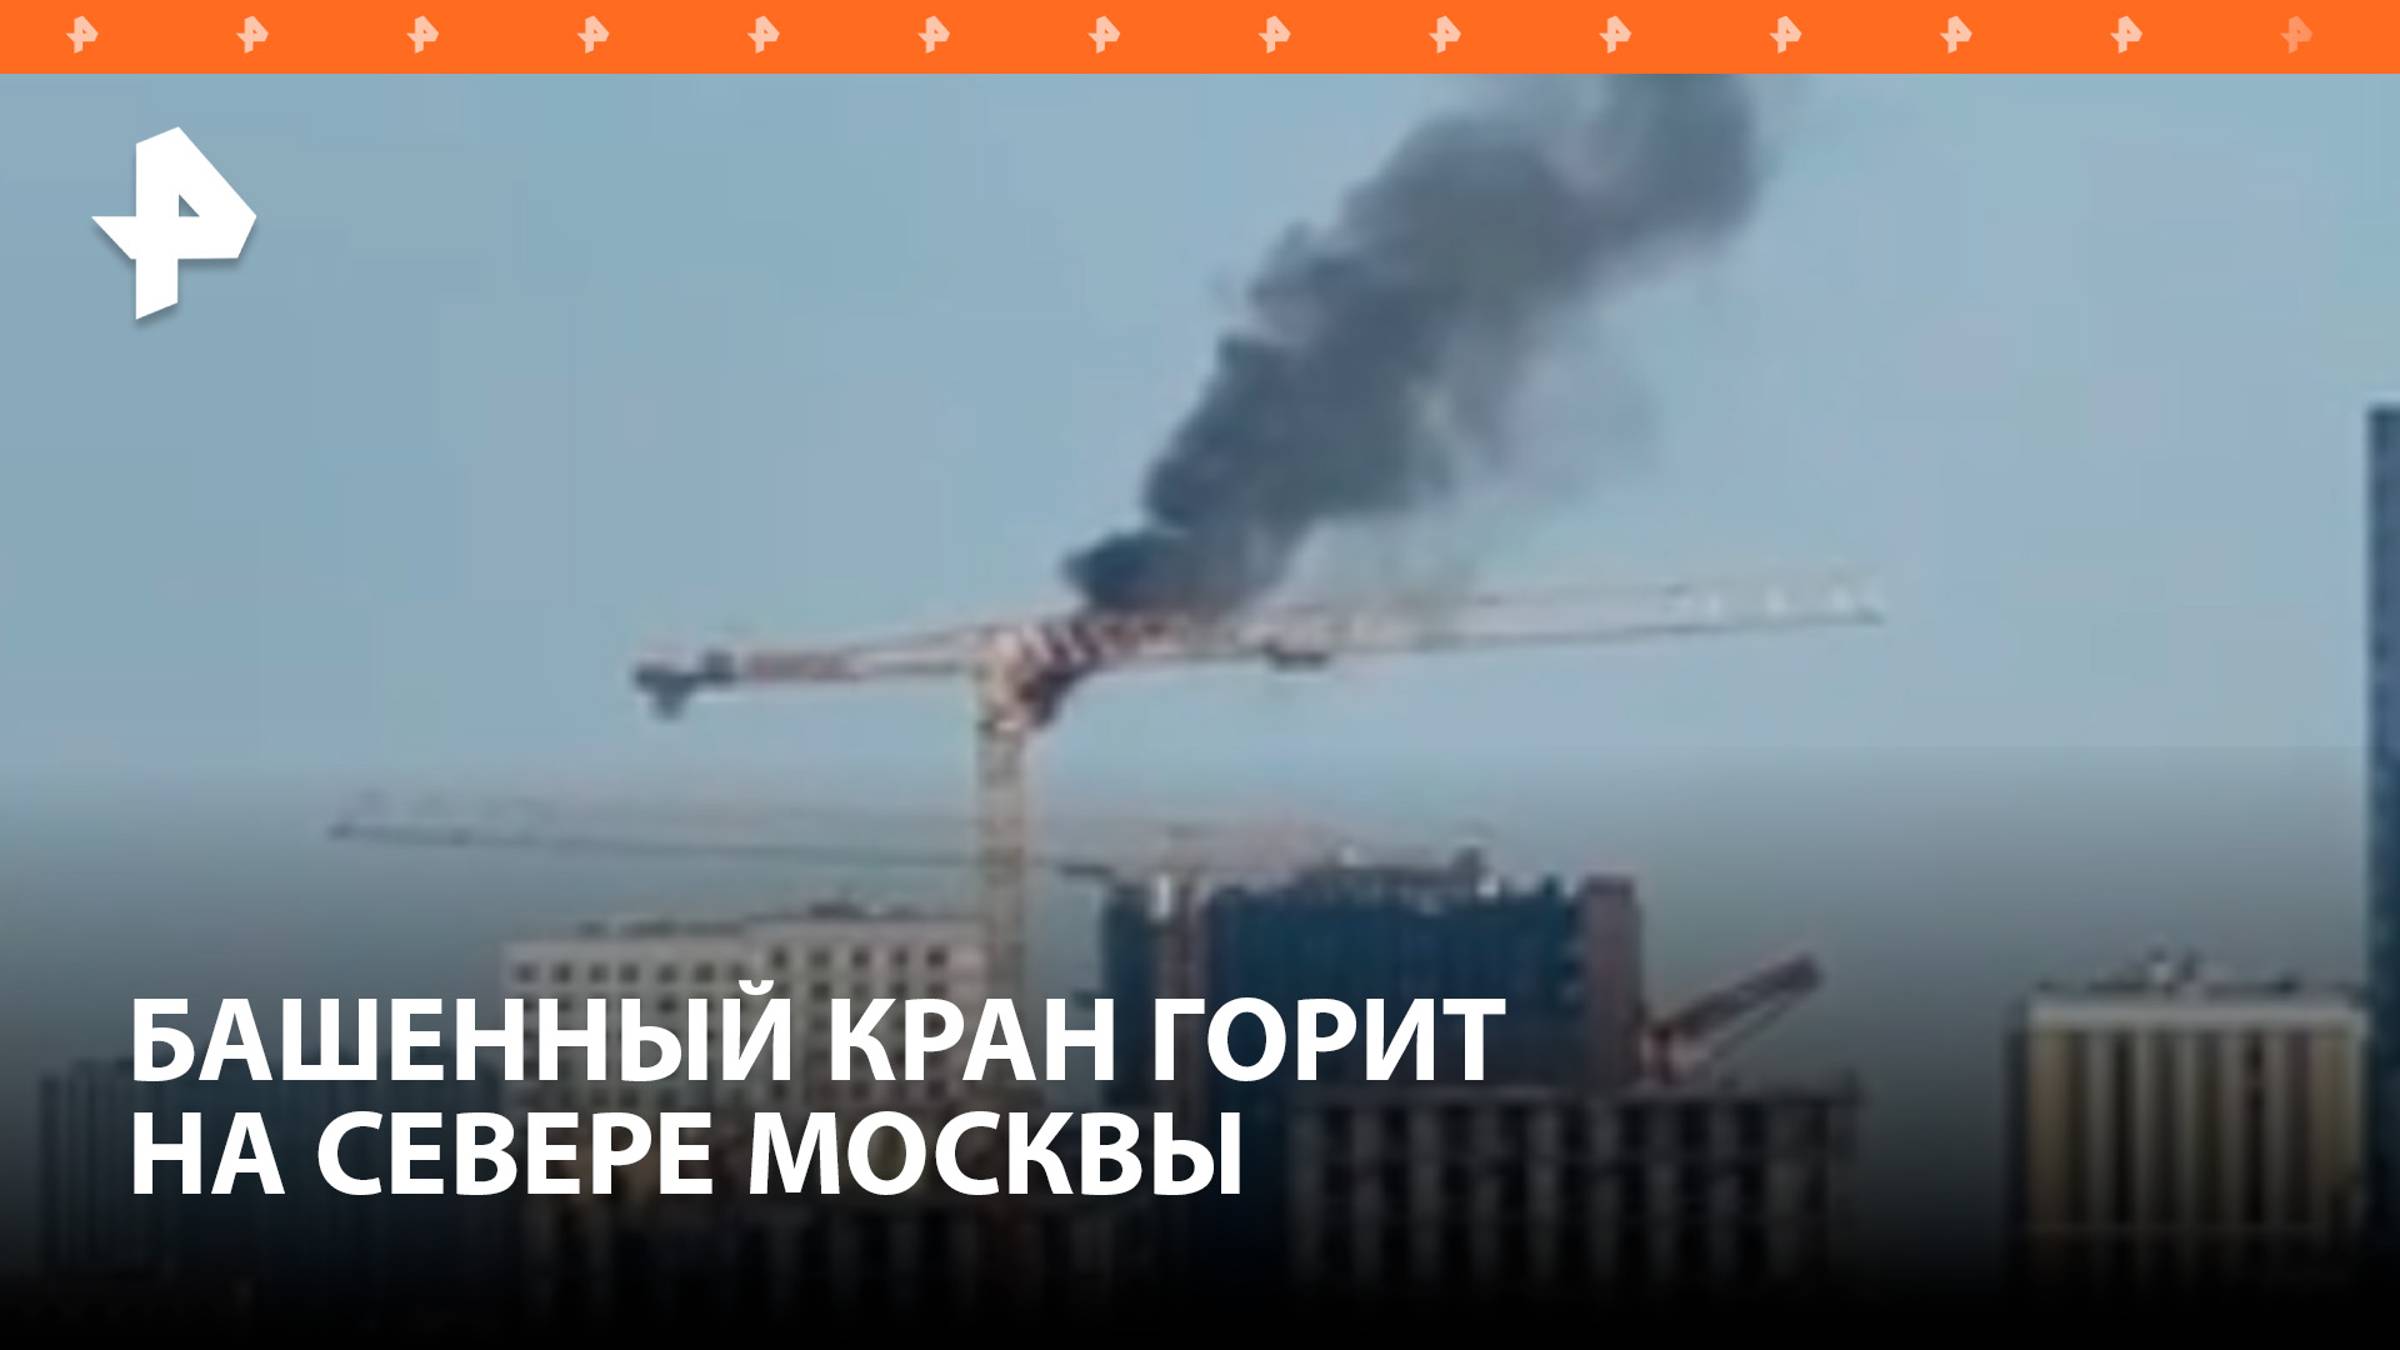 Строительный кран загорелся на севере Москвы